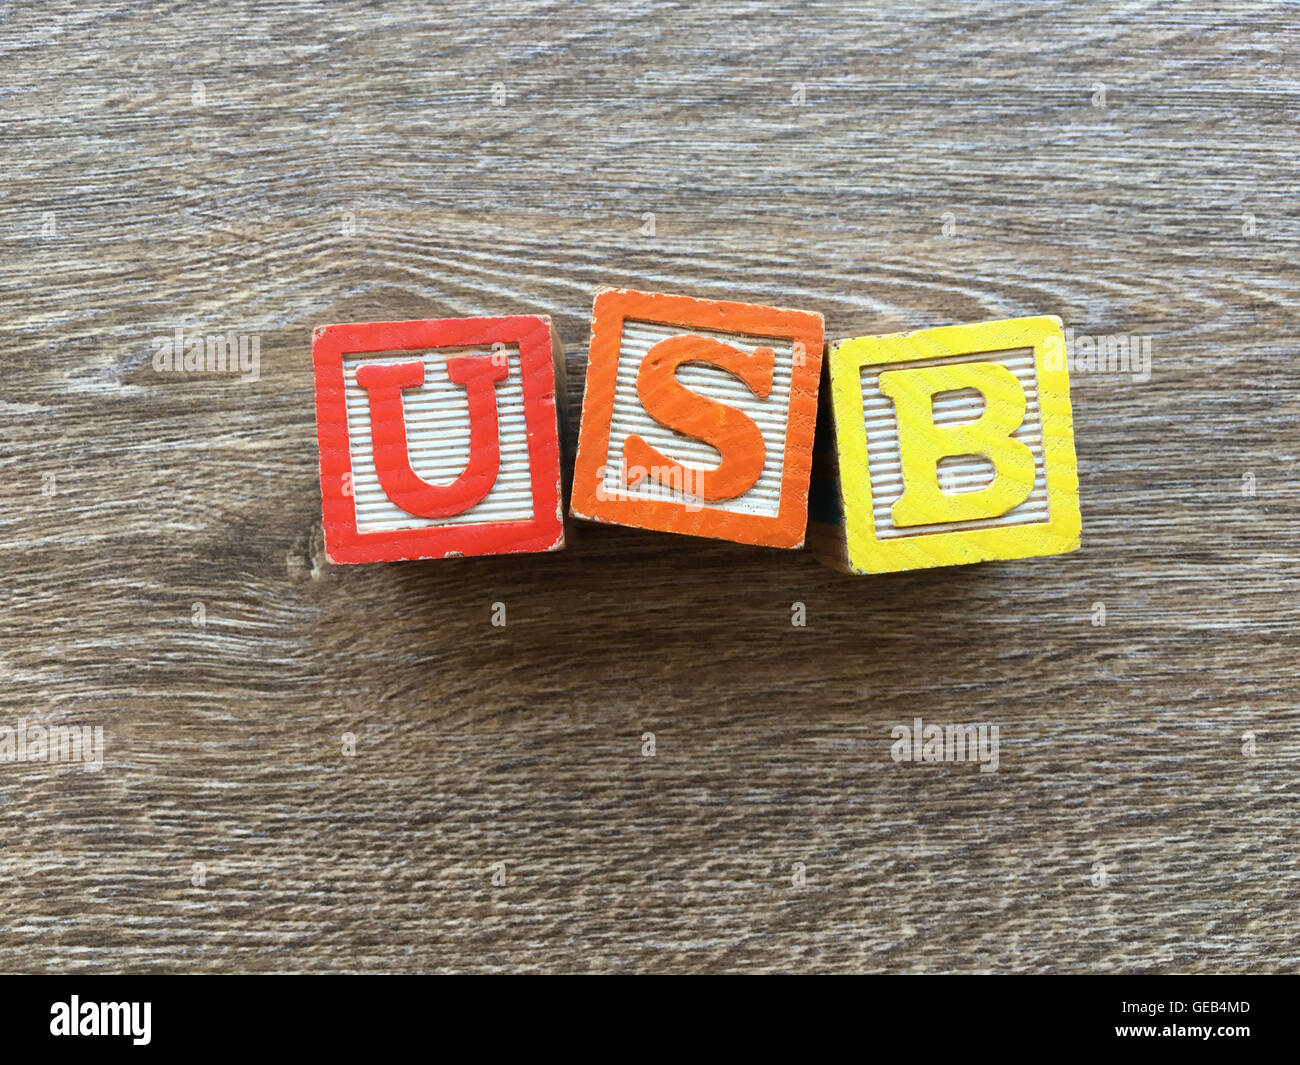 Holz-Block Buchstaben bilden die Abkürzung USB, kombinieren diese  Spielzeug-Briefe helfen Kinder zu lernen und schreiben Englisch  Stockfotografie - Alamy